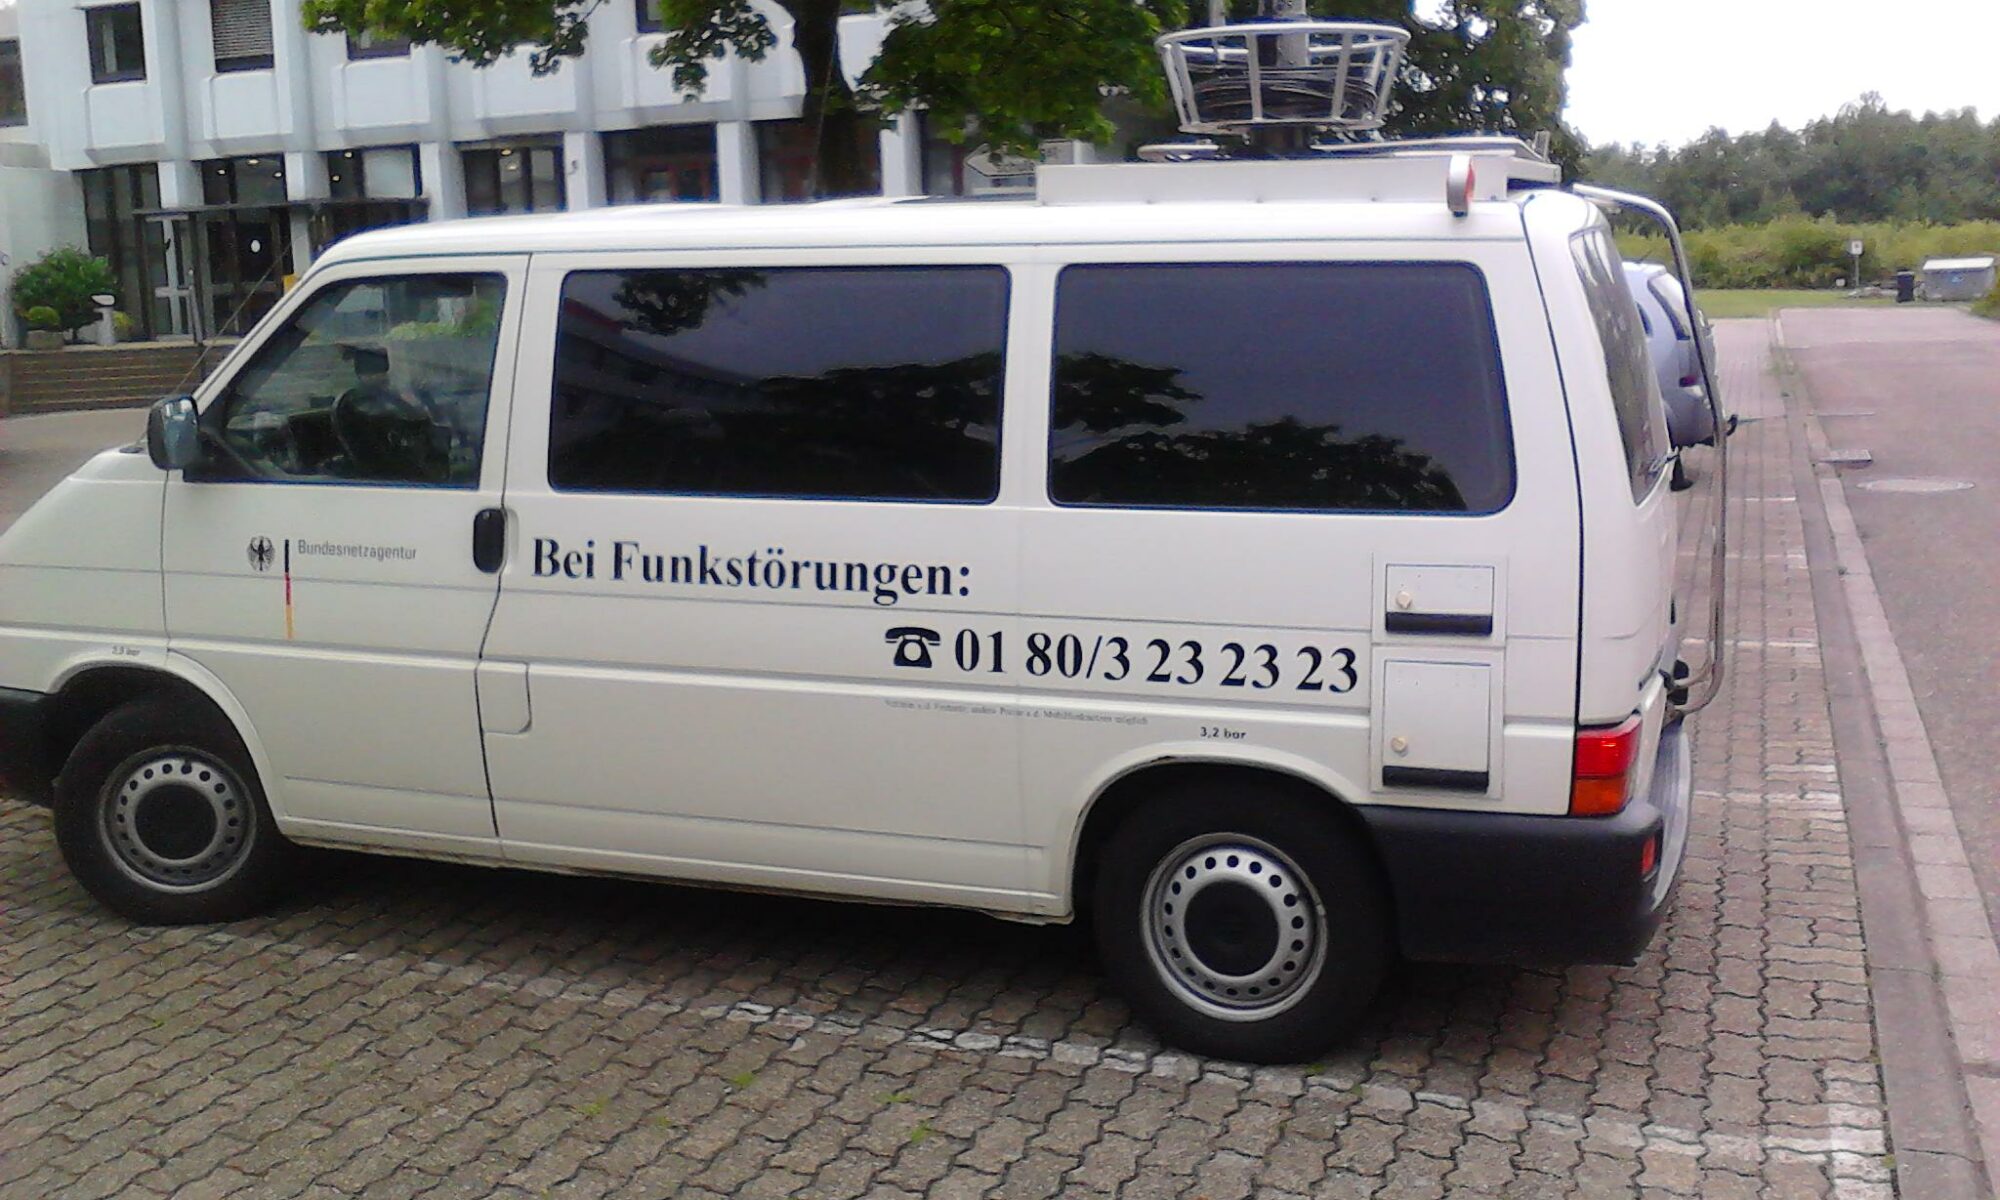 messwagen der Bundesnetzagentur vor der Zivildienstschule Karlsruhe am 9. Juni 2011